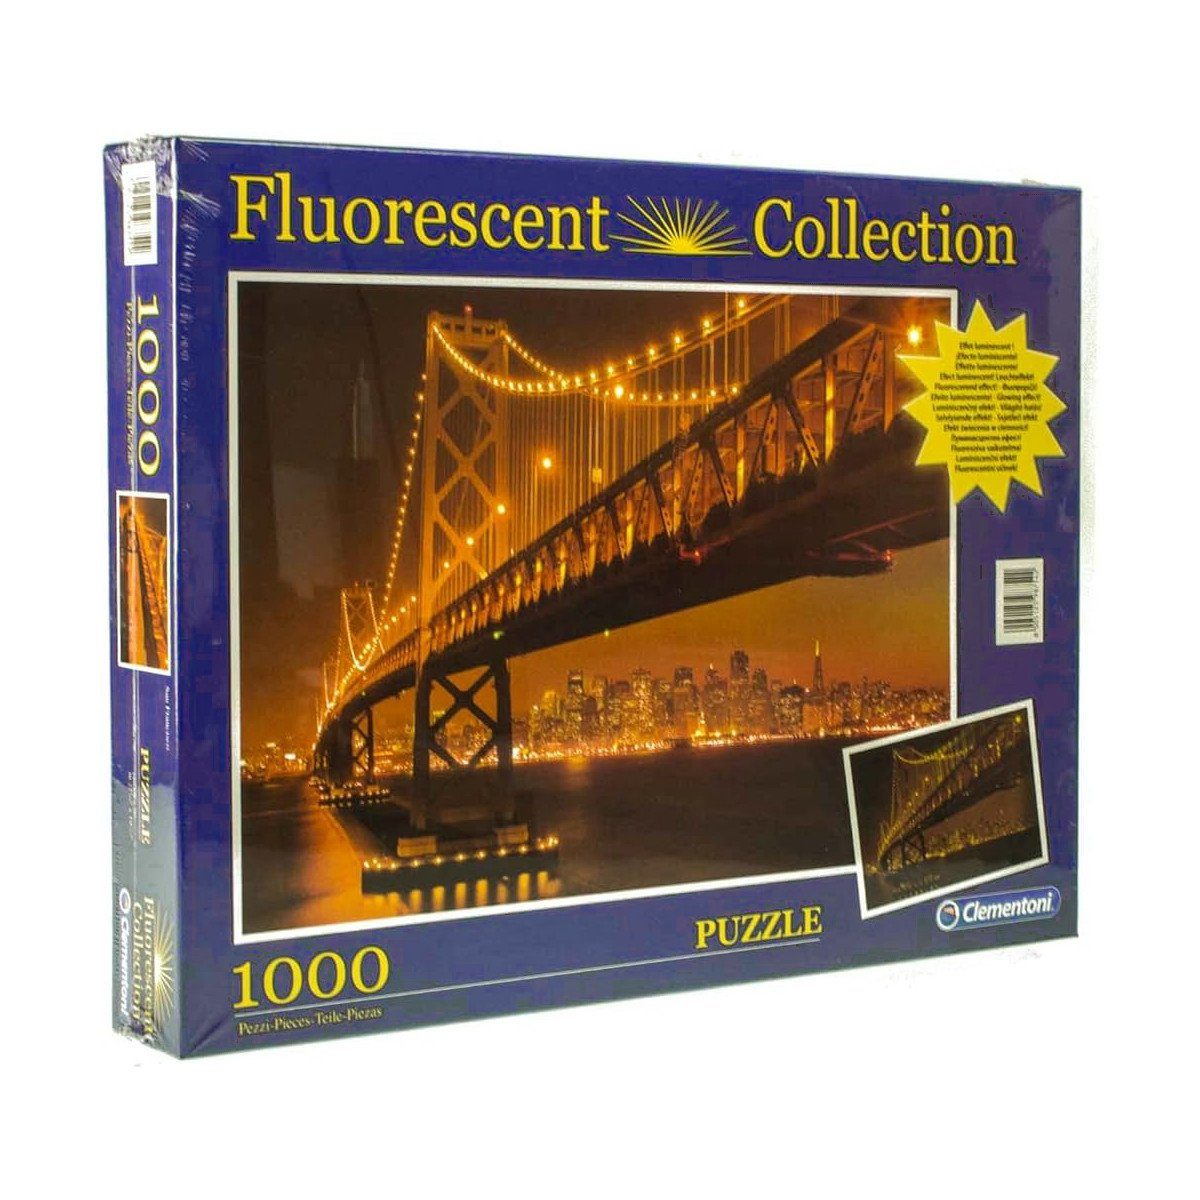 Puzzle Quality Collection floureszierend Francisco, Puzzleteile, San Clementoni® 1000 High